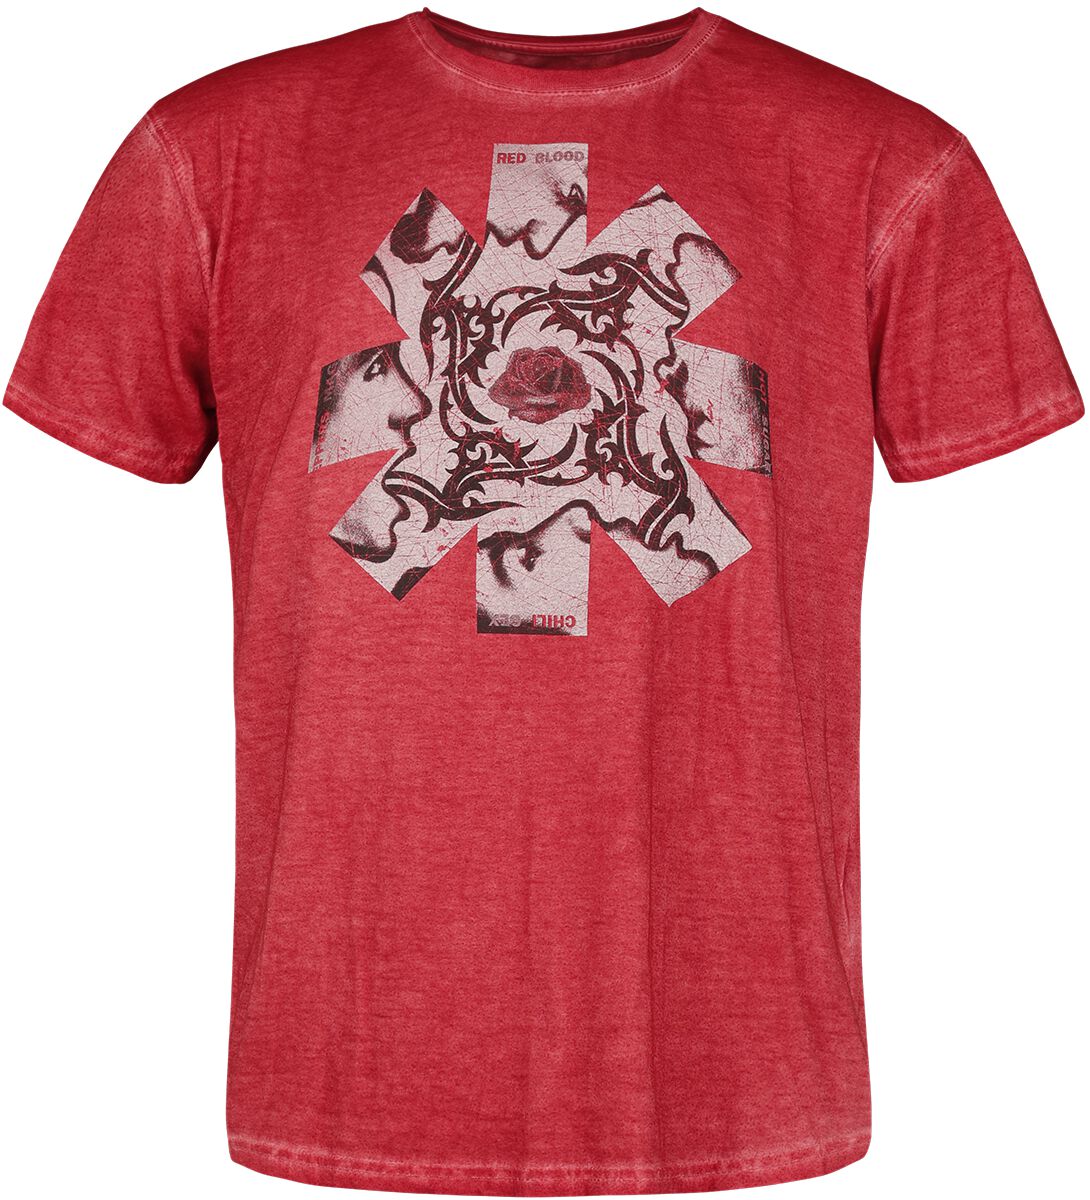 Red Hot Chili Peppers T-Shirt - Blood, Sugar, Sex, & Magik - S bis 3XL - für Männer - Größe M - rot  - Lizenziertes Merchandise!